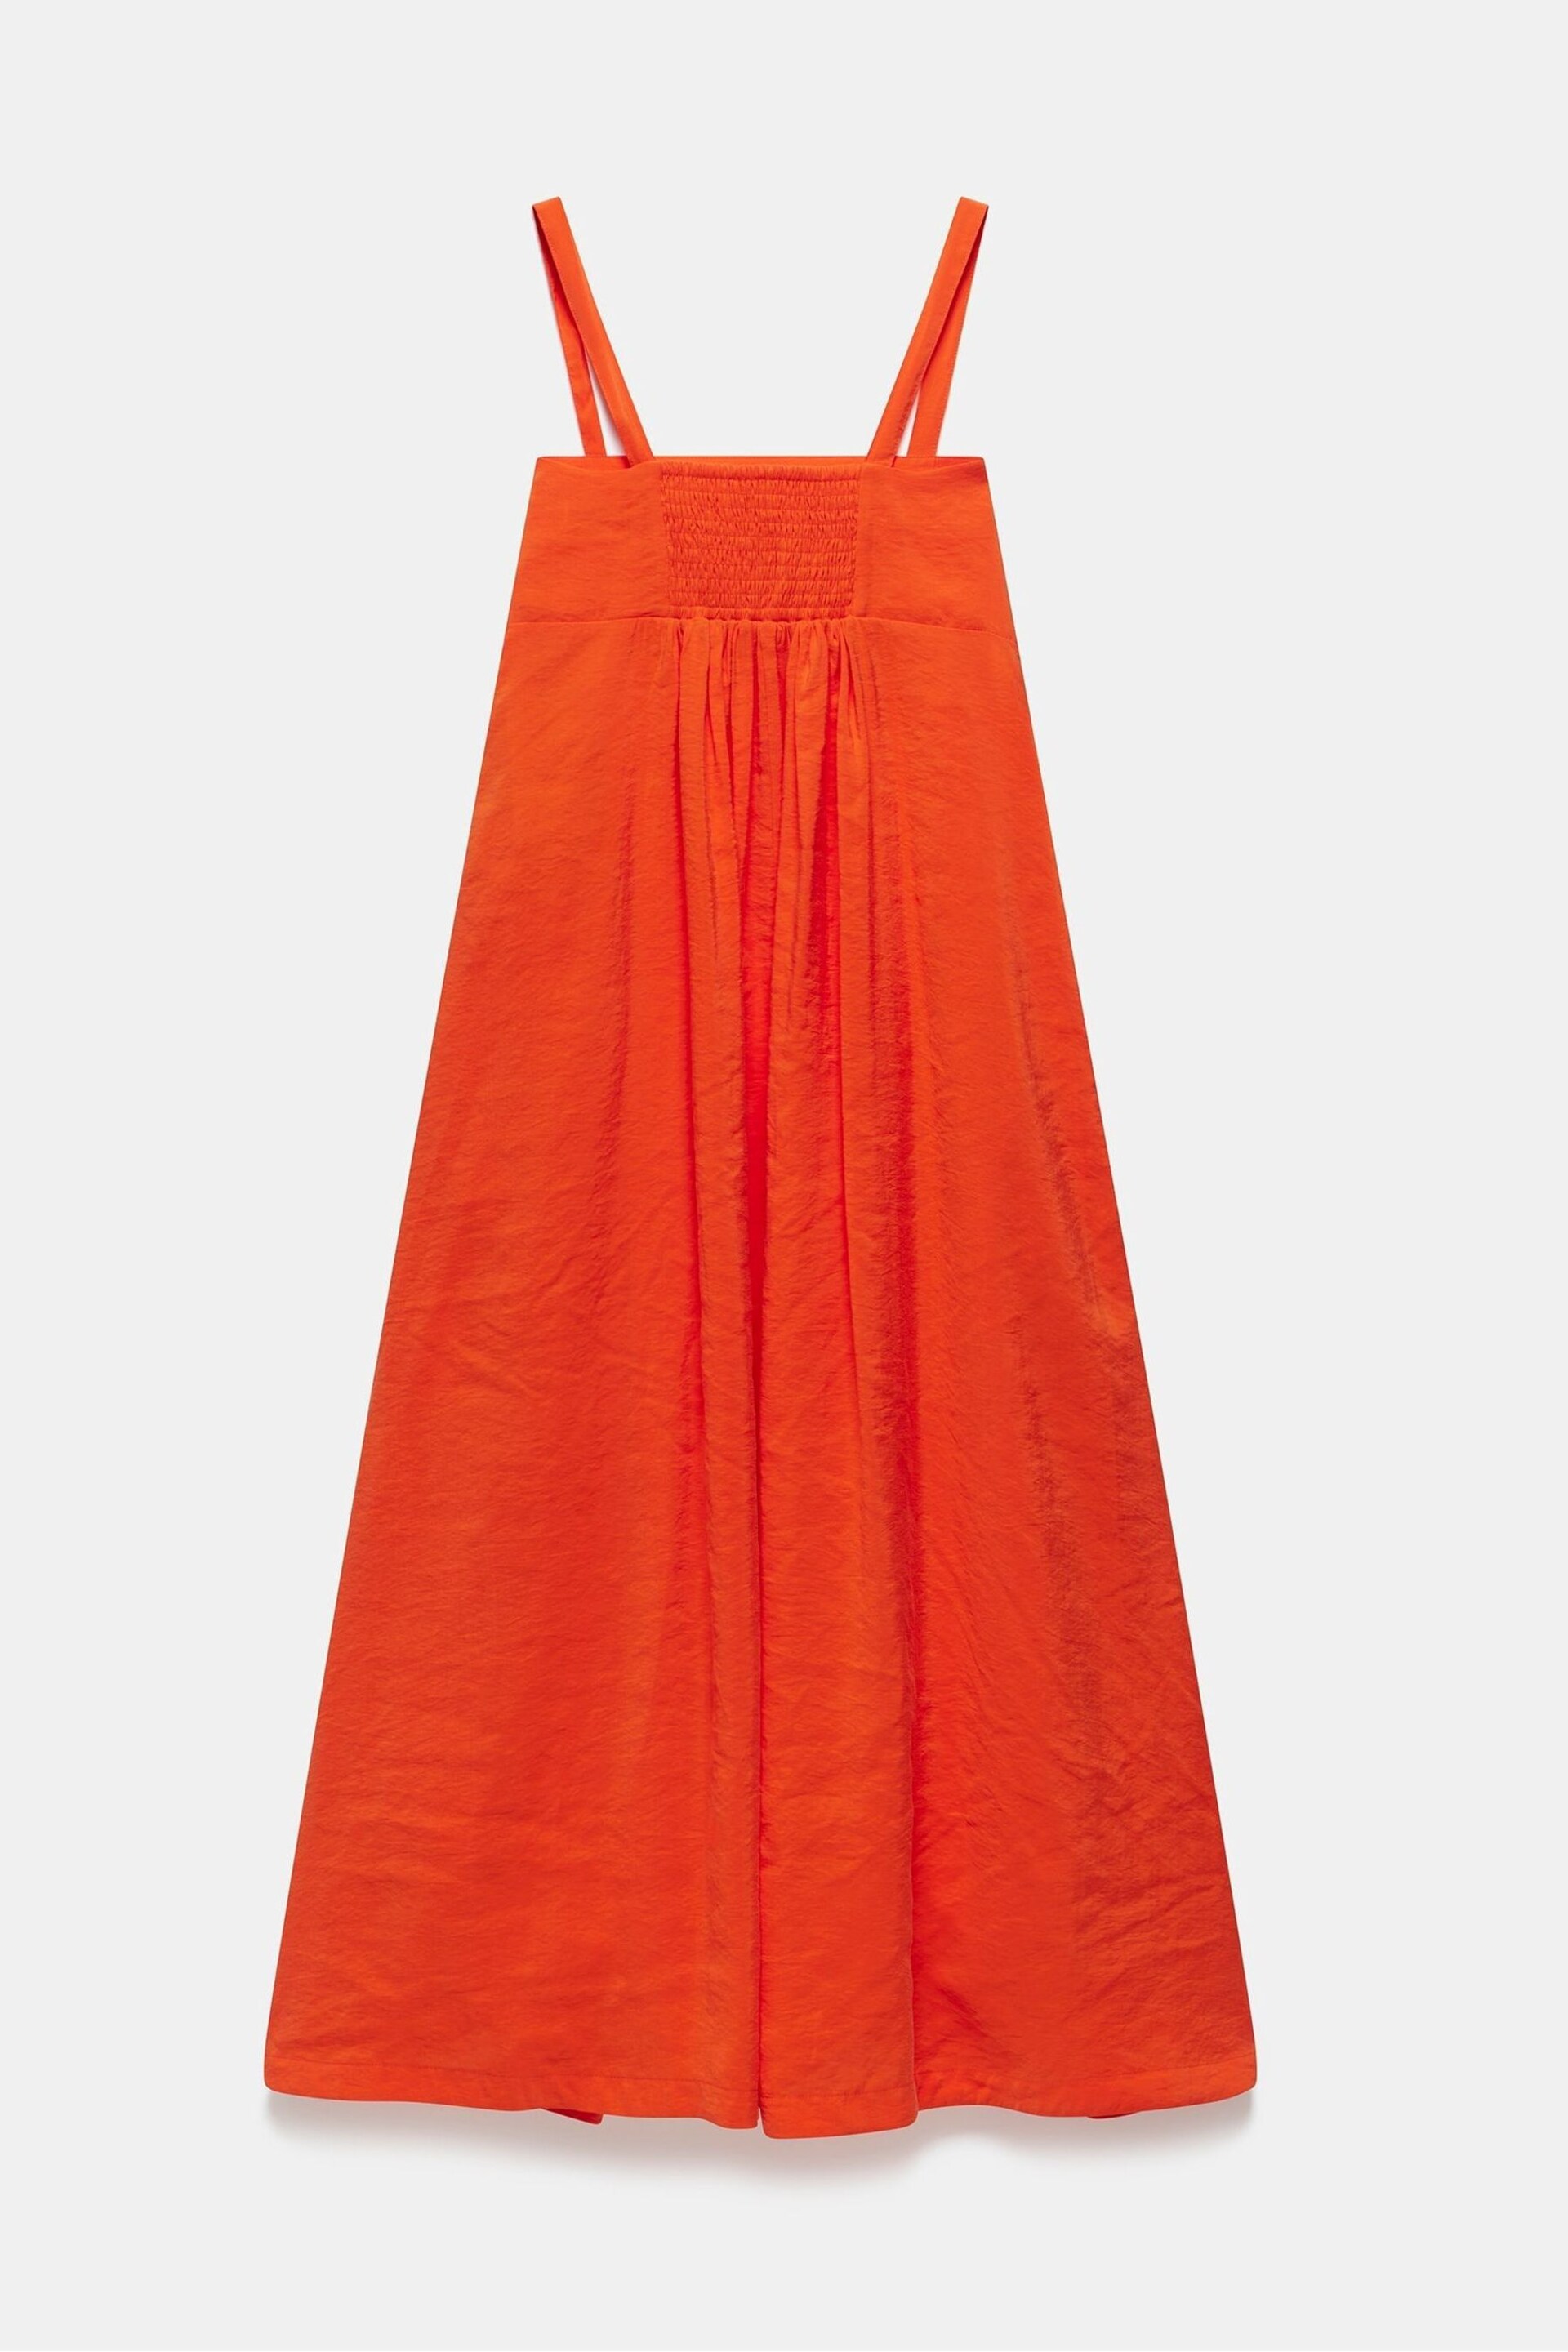 Mint Velvet Orange Floral Midi Dress - Image 4 of 4